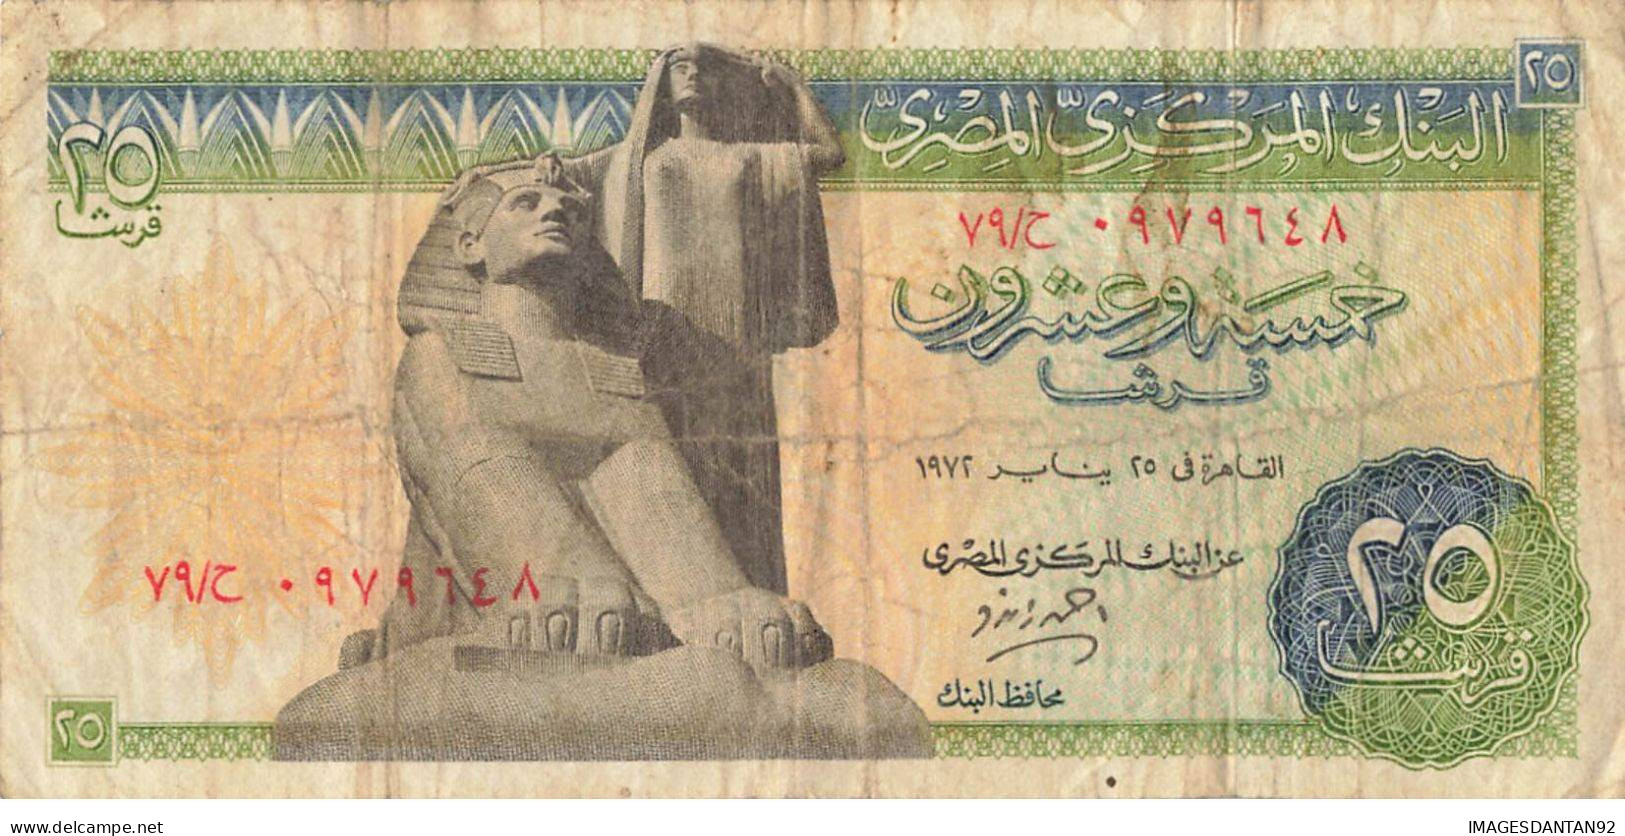 EGYPTE EGYPT 17 BANK NOTE PIASTRE POUND - Egypte